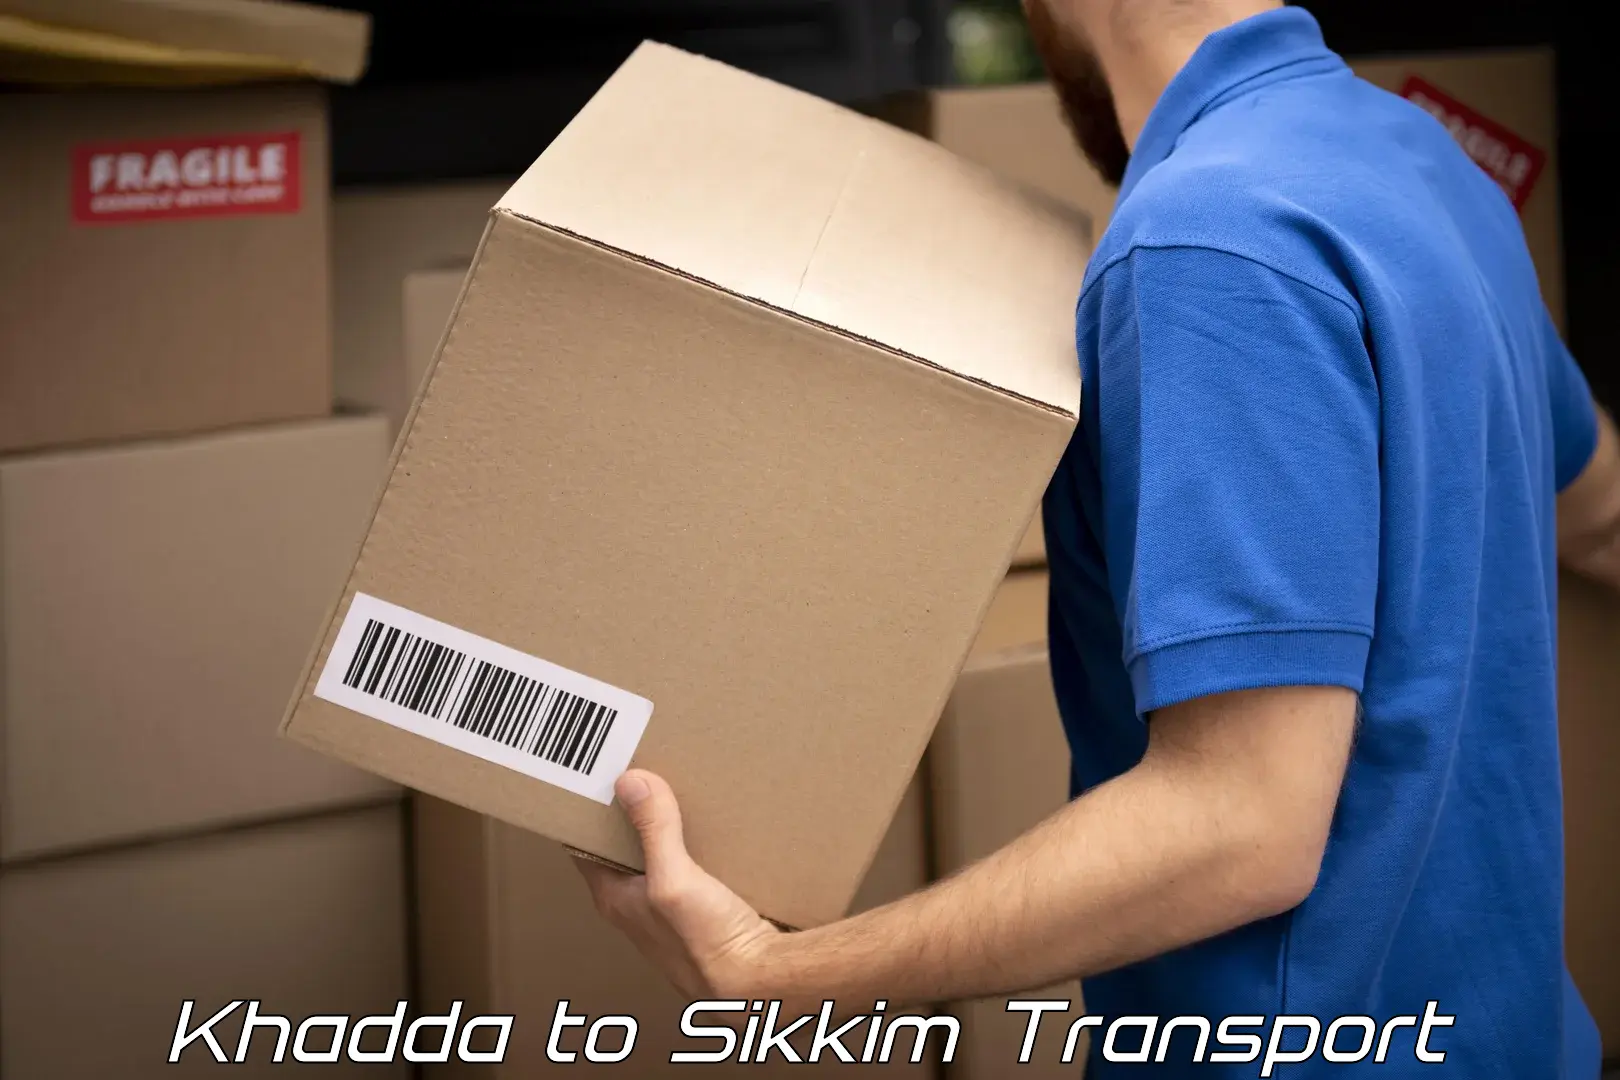 Transport shared services Khadda to Mangan